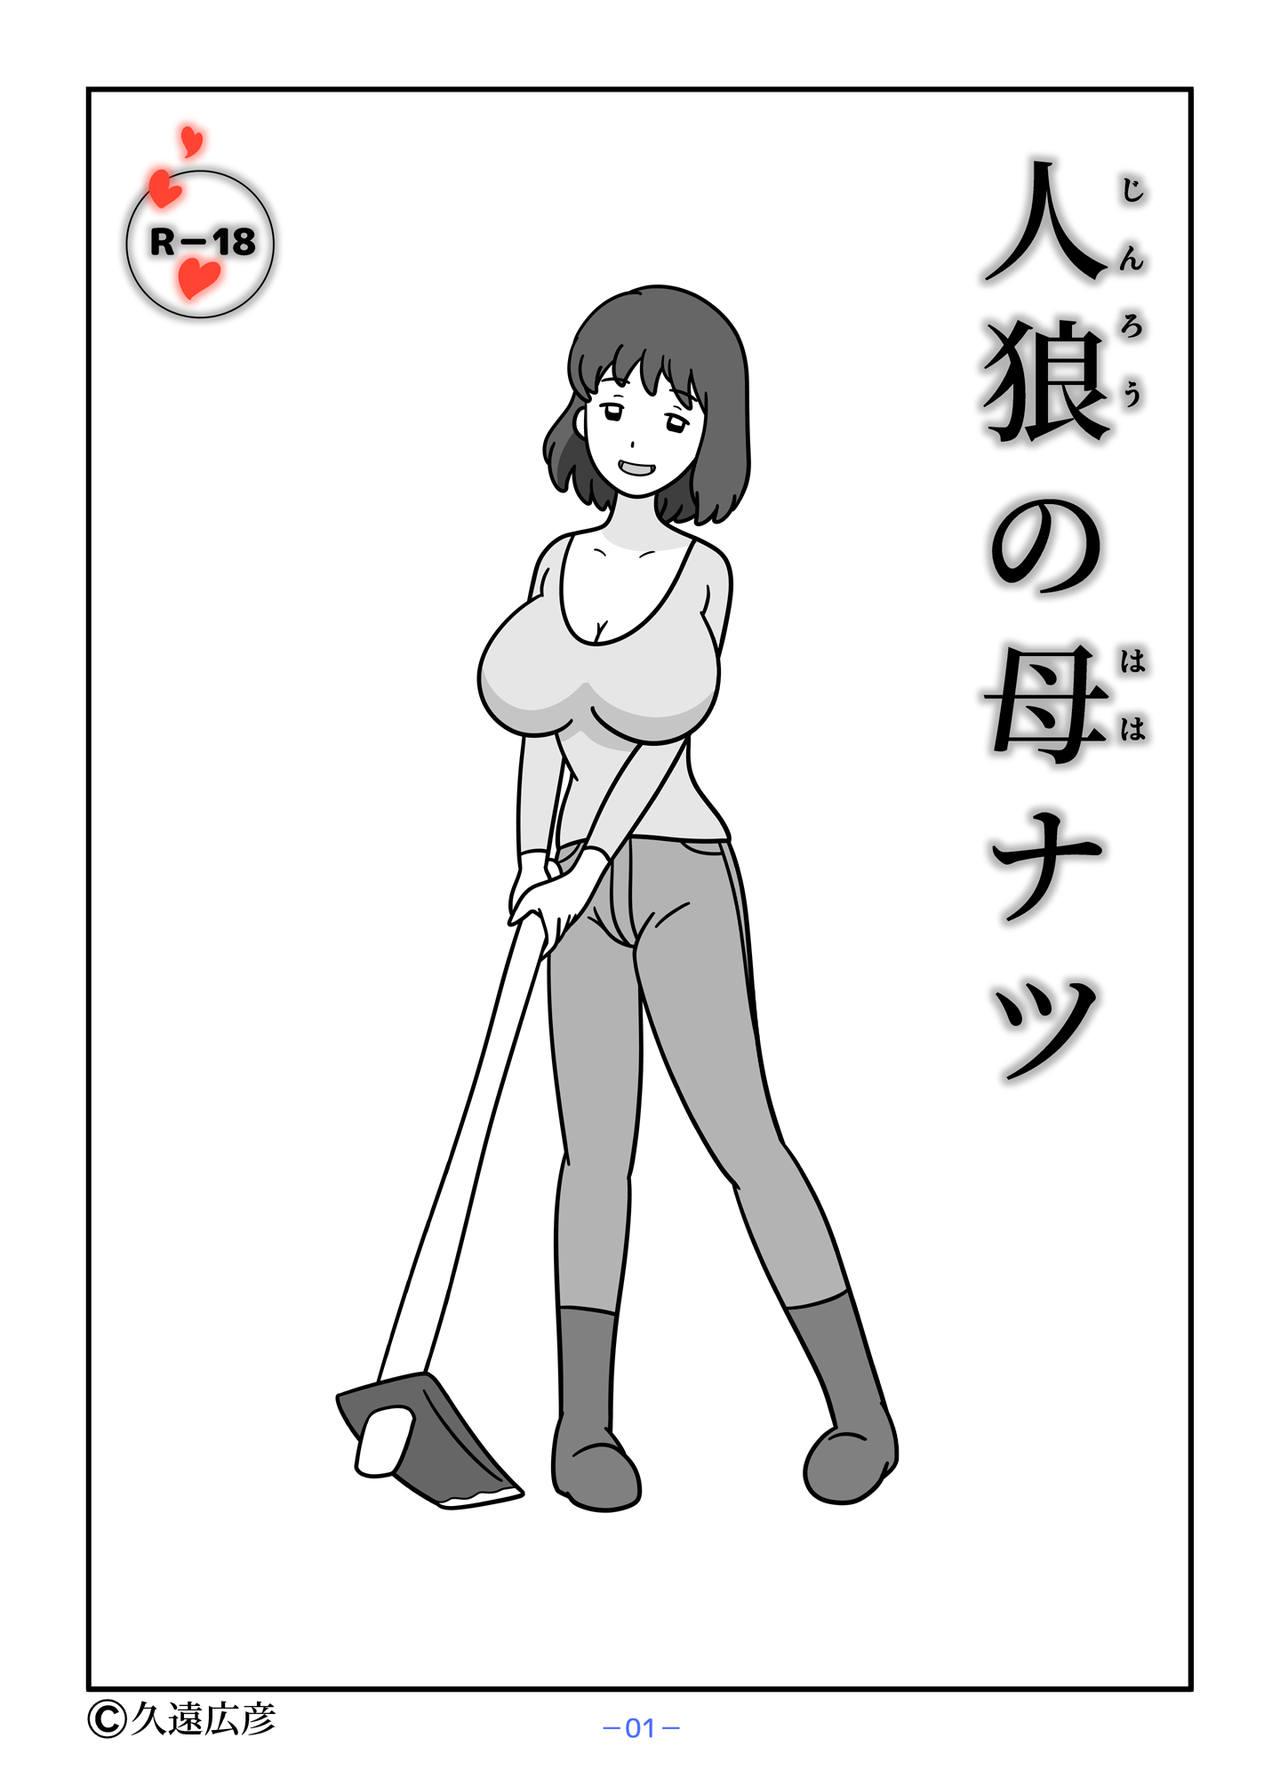 Bj Jinrou no Haha Natsu - Original Strip - Page 1